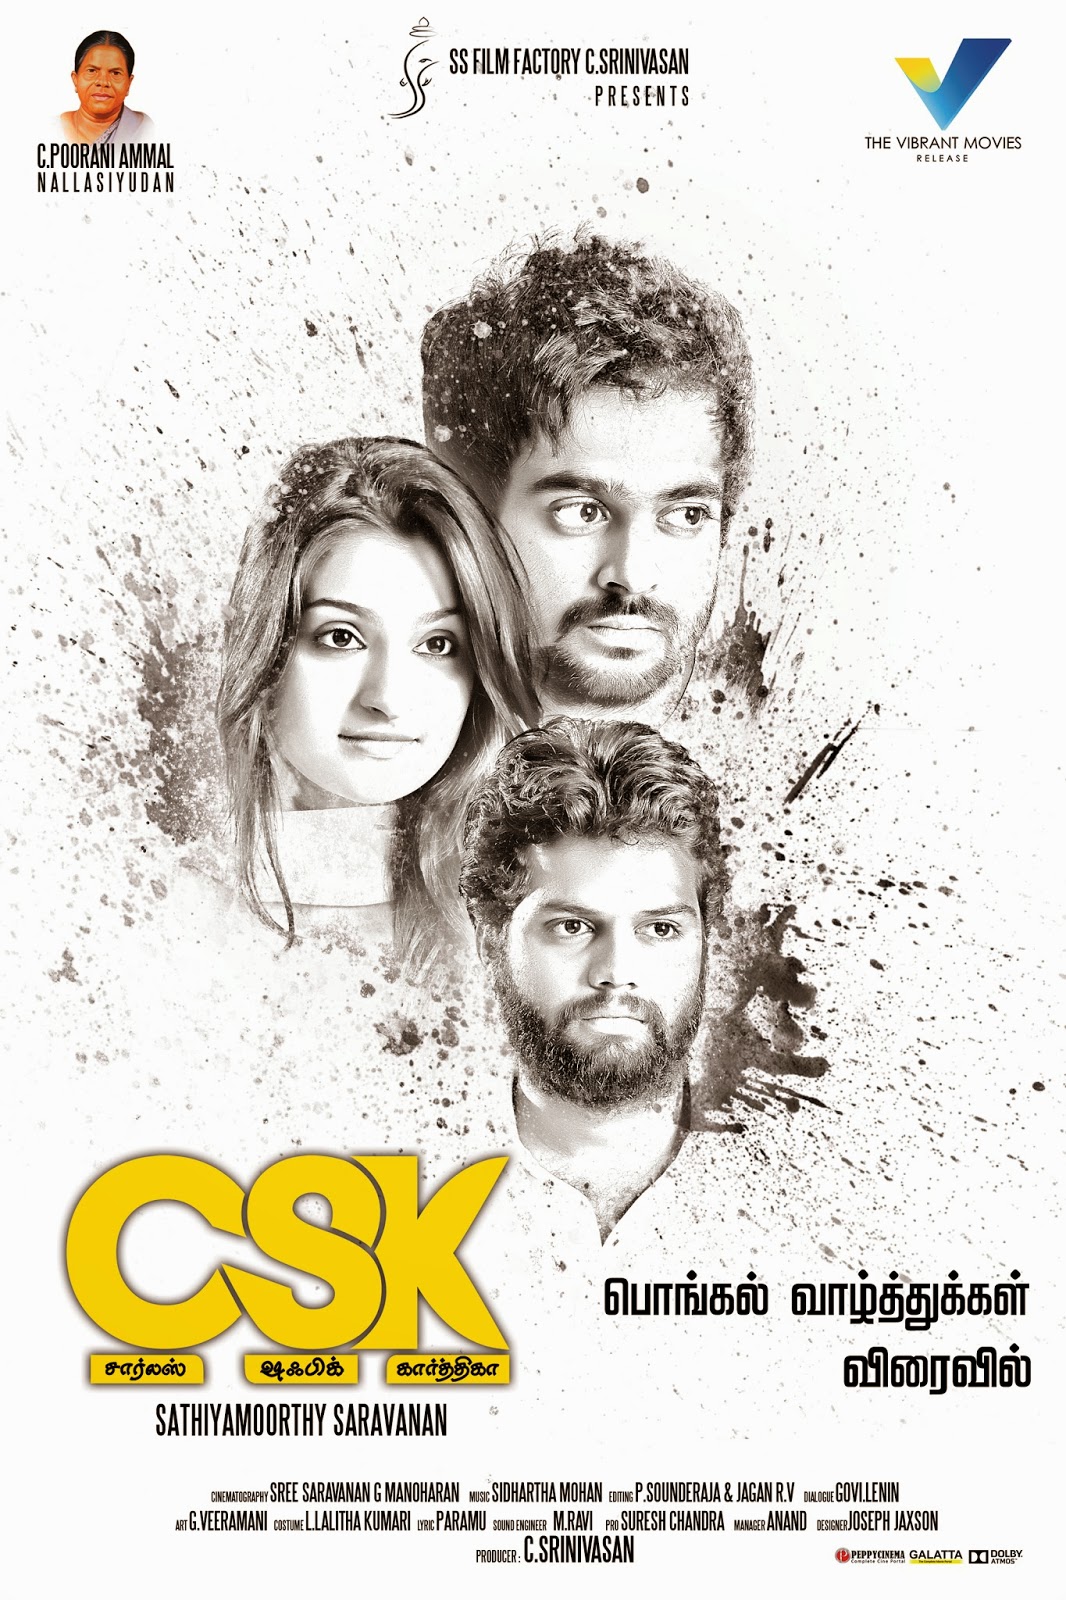 Charles Shafiq Karthiga Csk Tamil Movie Poster - HD Wallpaper 